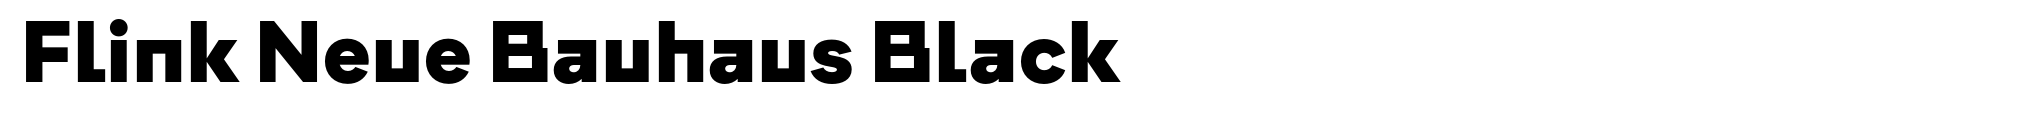 Flink Neue Bauhaus Black image